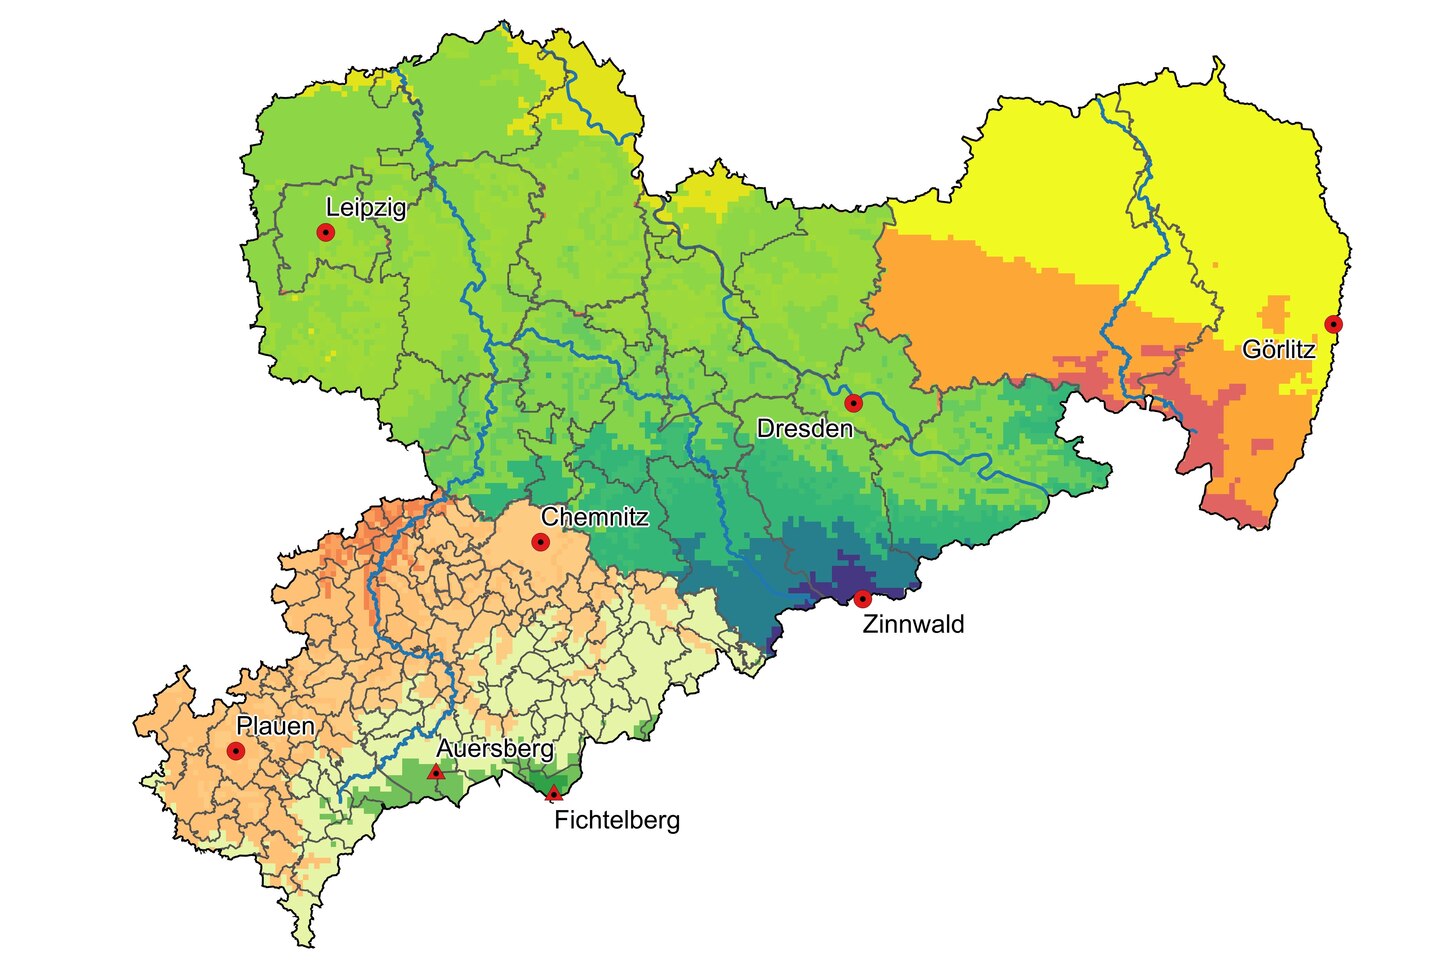 Klimakarte von Sachsen mit unterschiedlichen Regionen: Kommunen, Landkreisen und Leader-Regionen